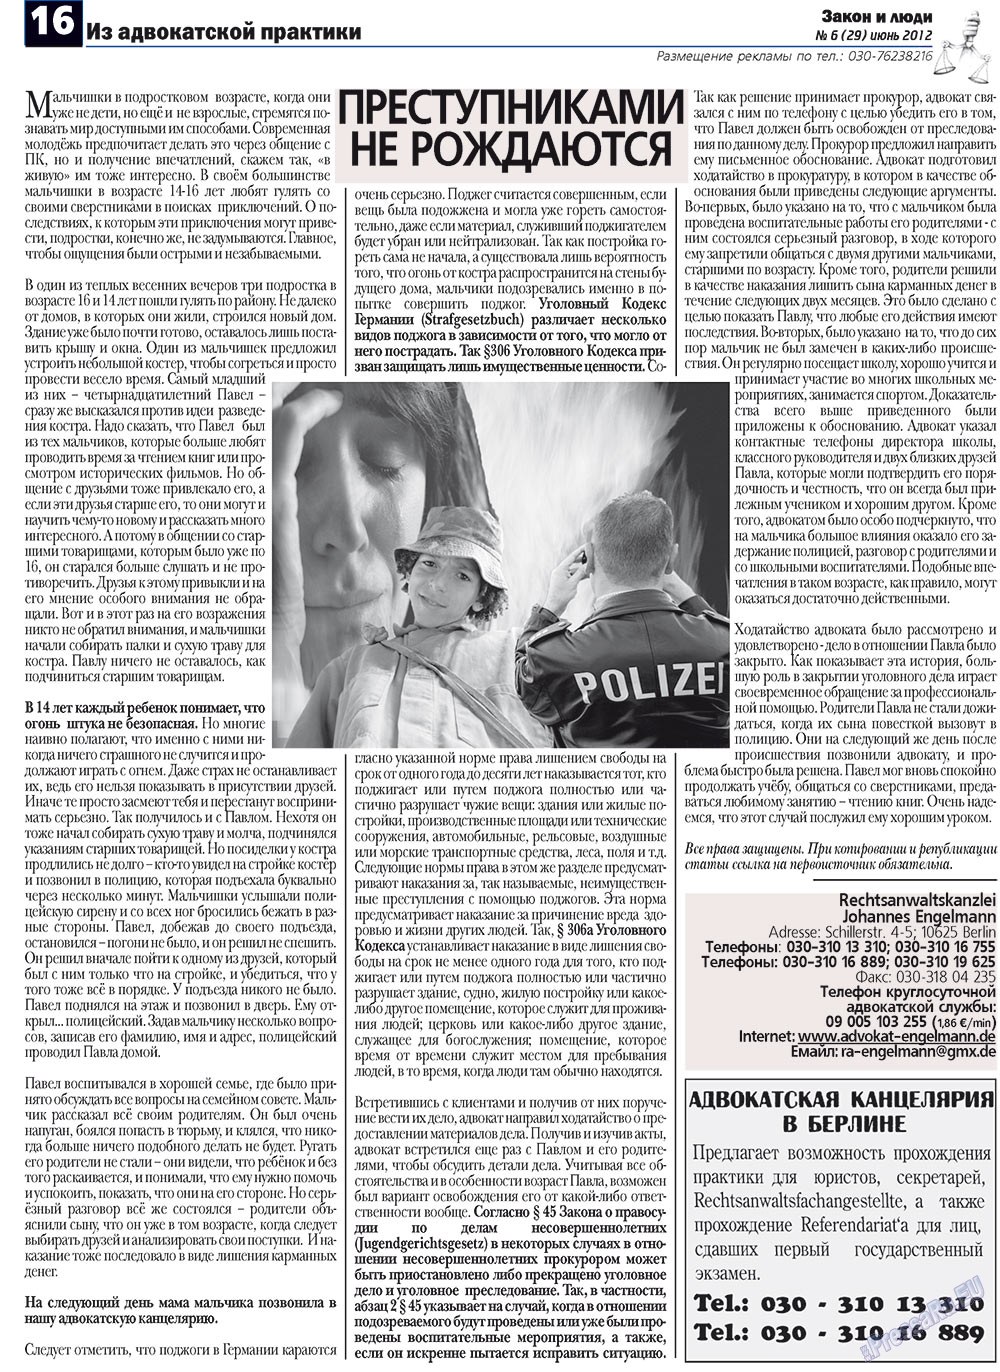 Закон и люди (газета). 2012 год, номер 6, стр. 16